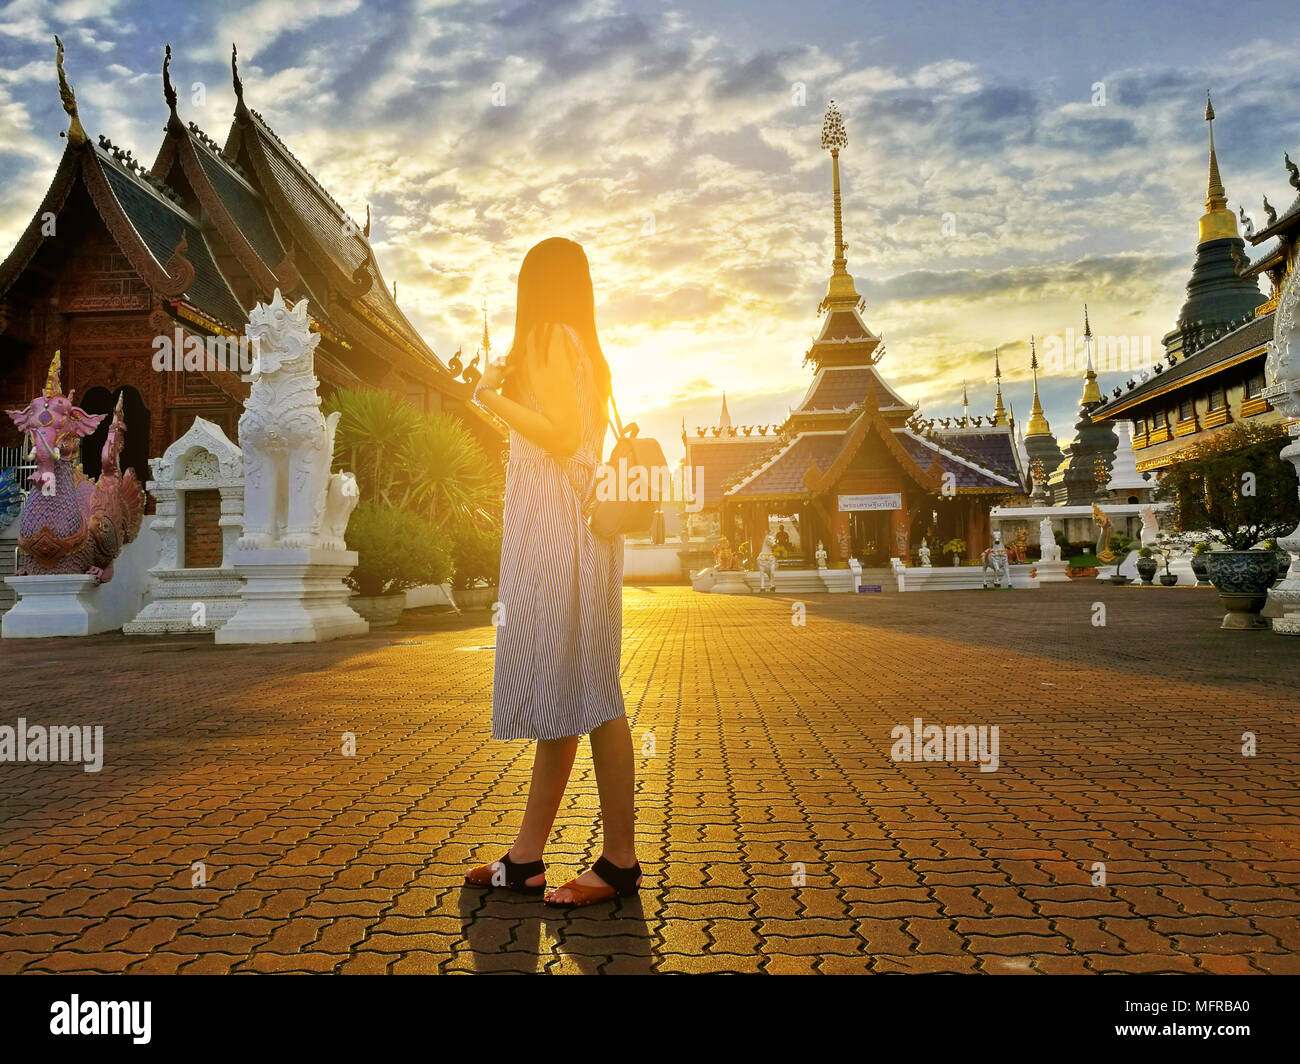 Young Asian woman touristiques explore Wat Ban Den temple bouddhiste situé dans la province de Chiangmai, Thaïlande Banque D'Images